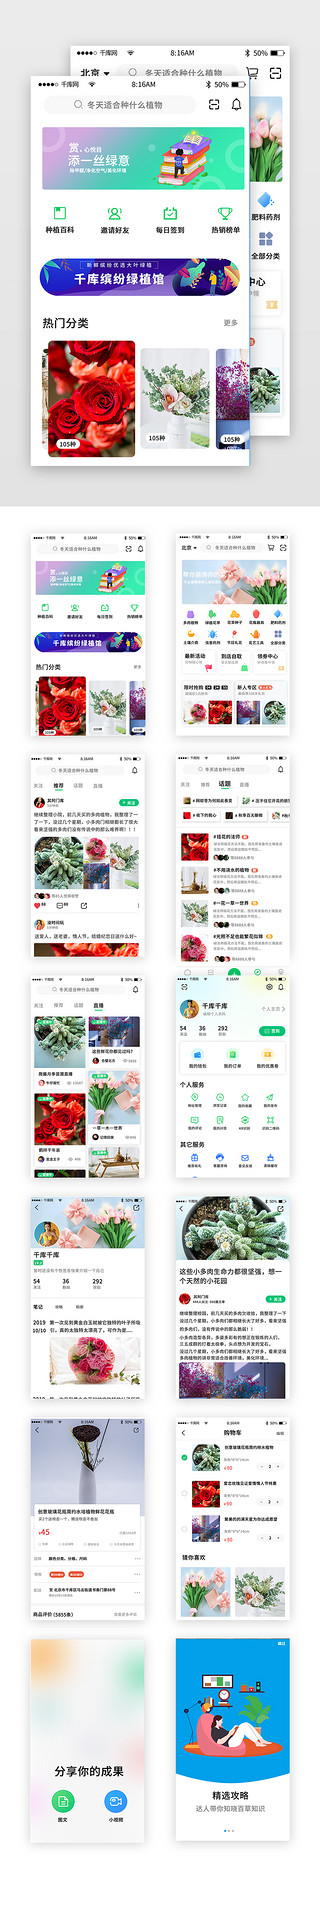 海洋菌类植物UI设计素材_植物花卉类商城app套图